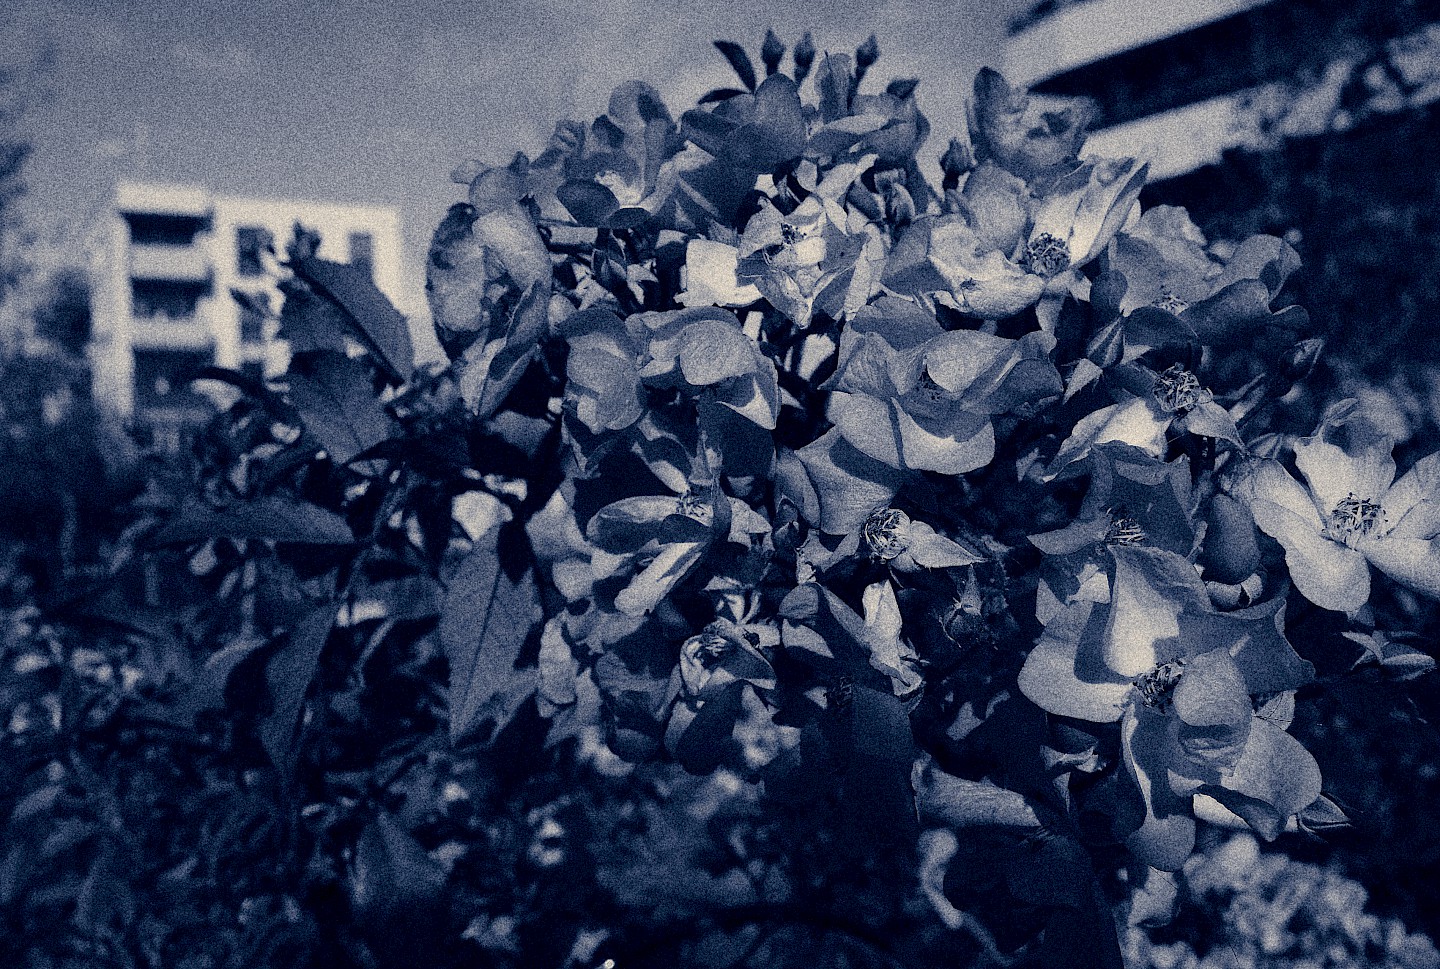 Foto aus der Ausstellung "Blaue Blume" mit dem Verfahren der Cyanotypie